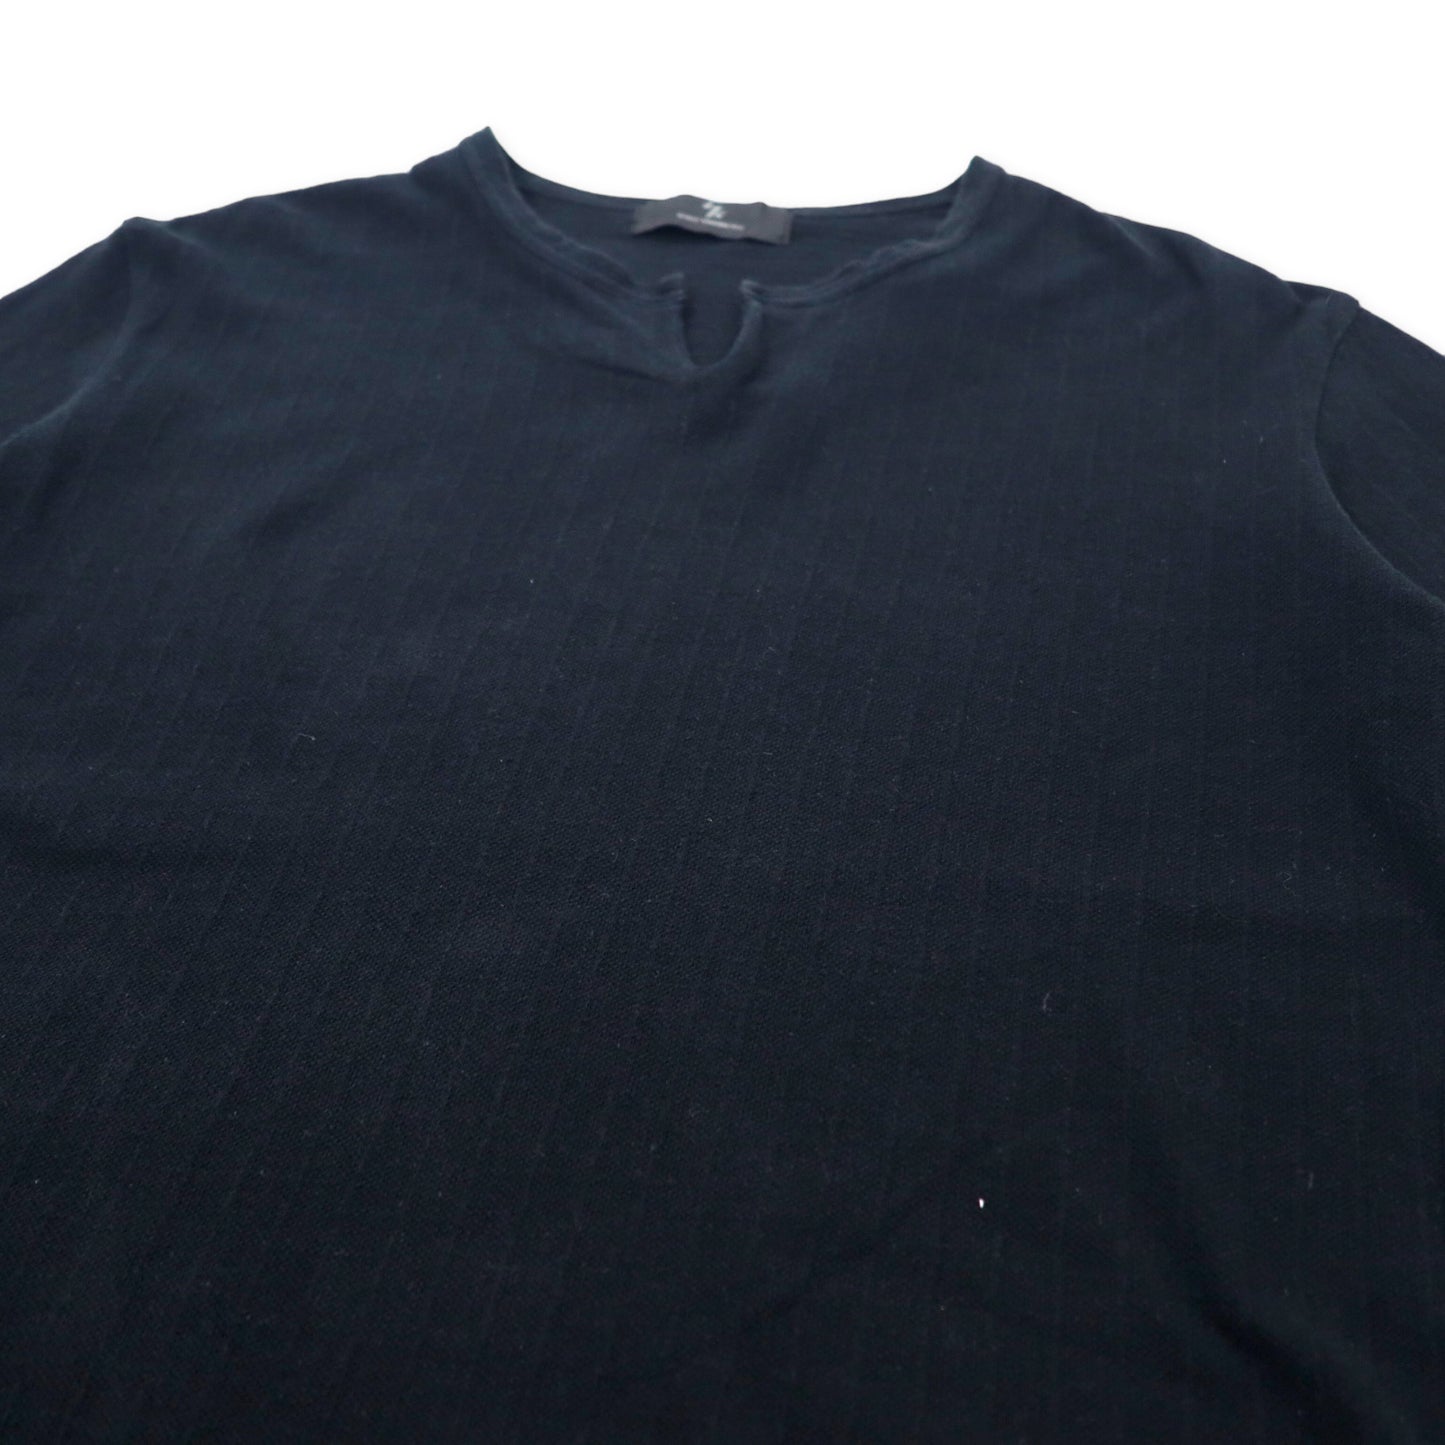 Y's YOHJI YAMAMOTO キーネック 鹿の子 Tシャツ 3 ブラック コットン MP-T16-053 日本製